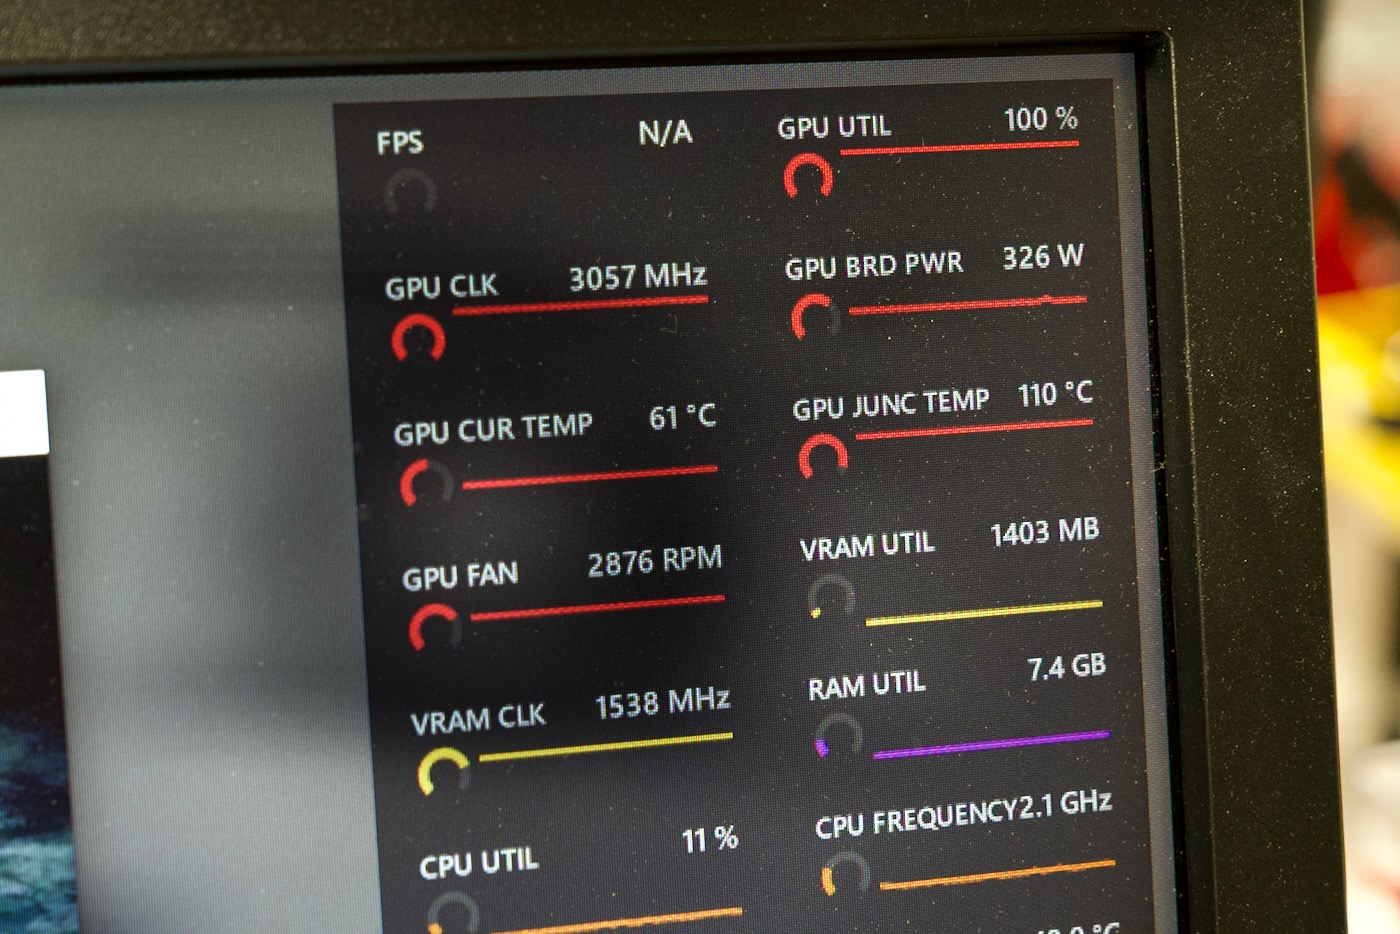 MSI Kombustor GPU stress test 110 degrees C AMD RX 7900 XTX - closeup of stats